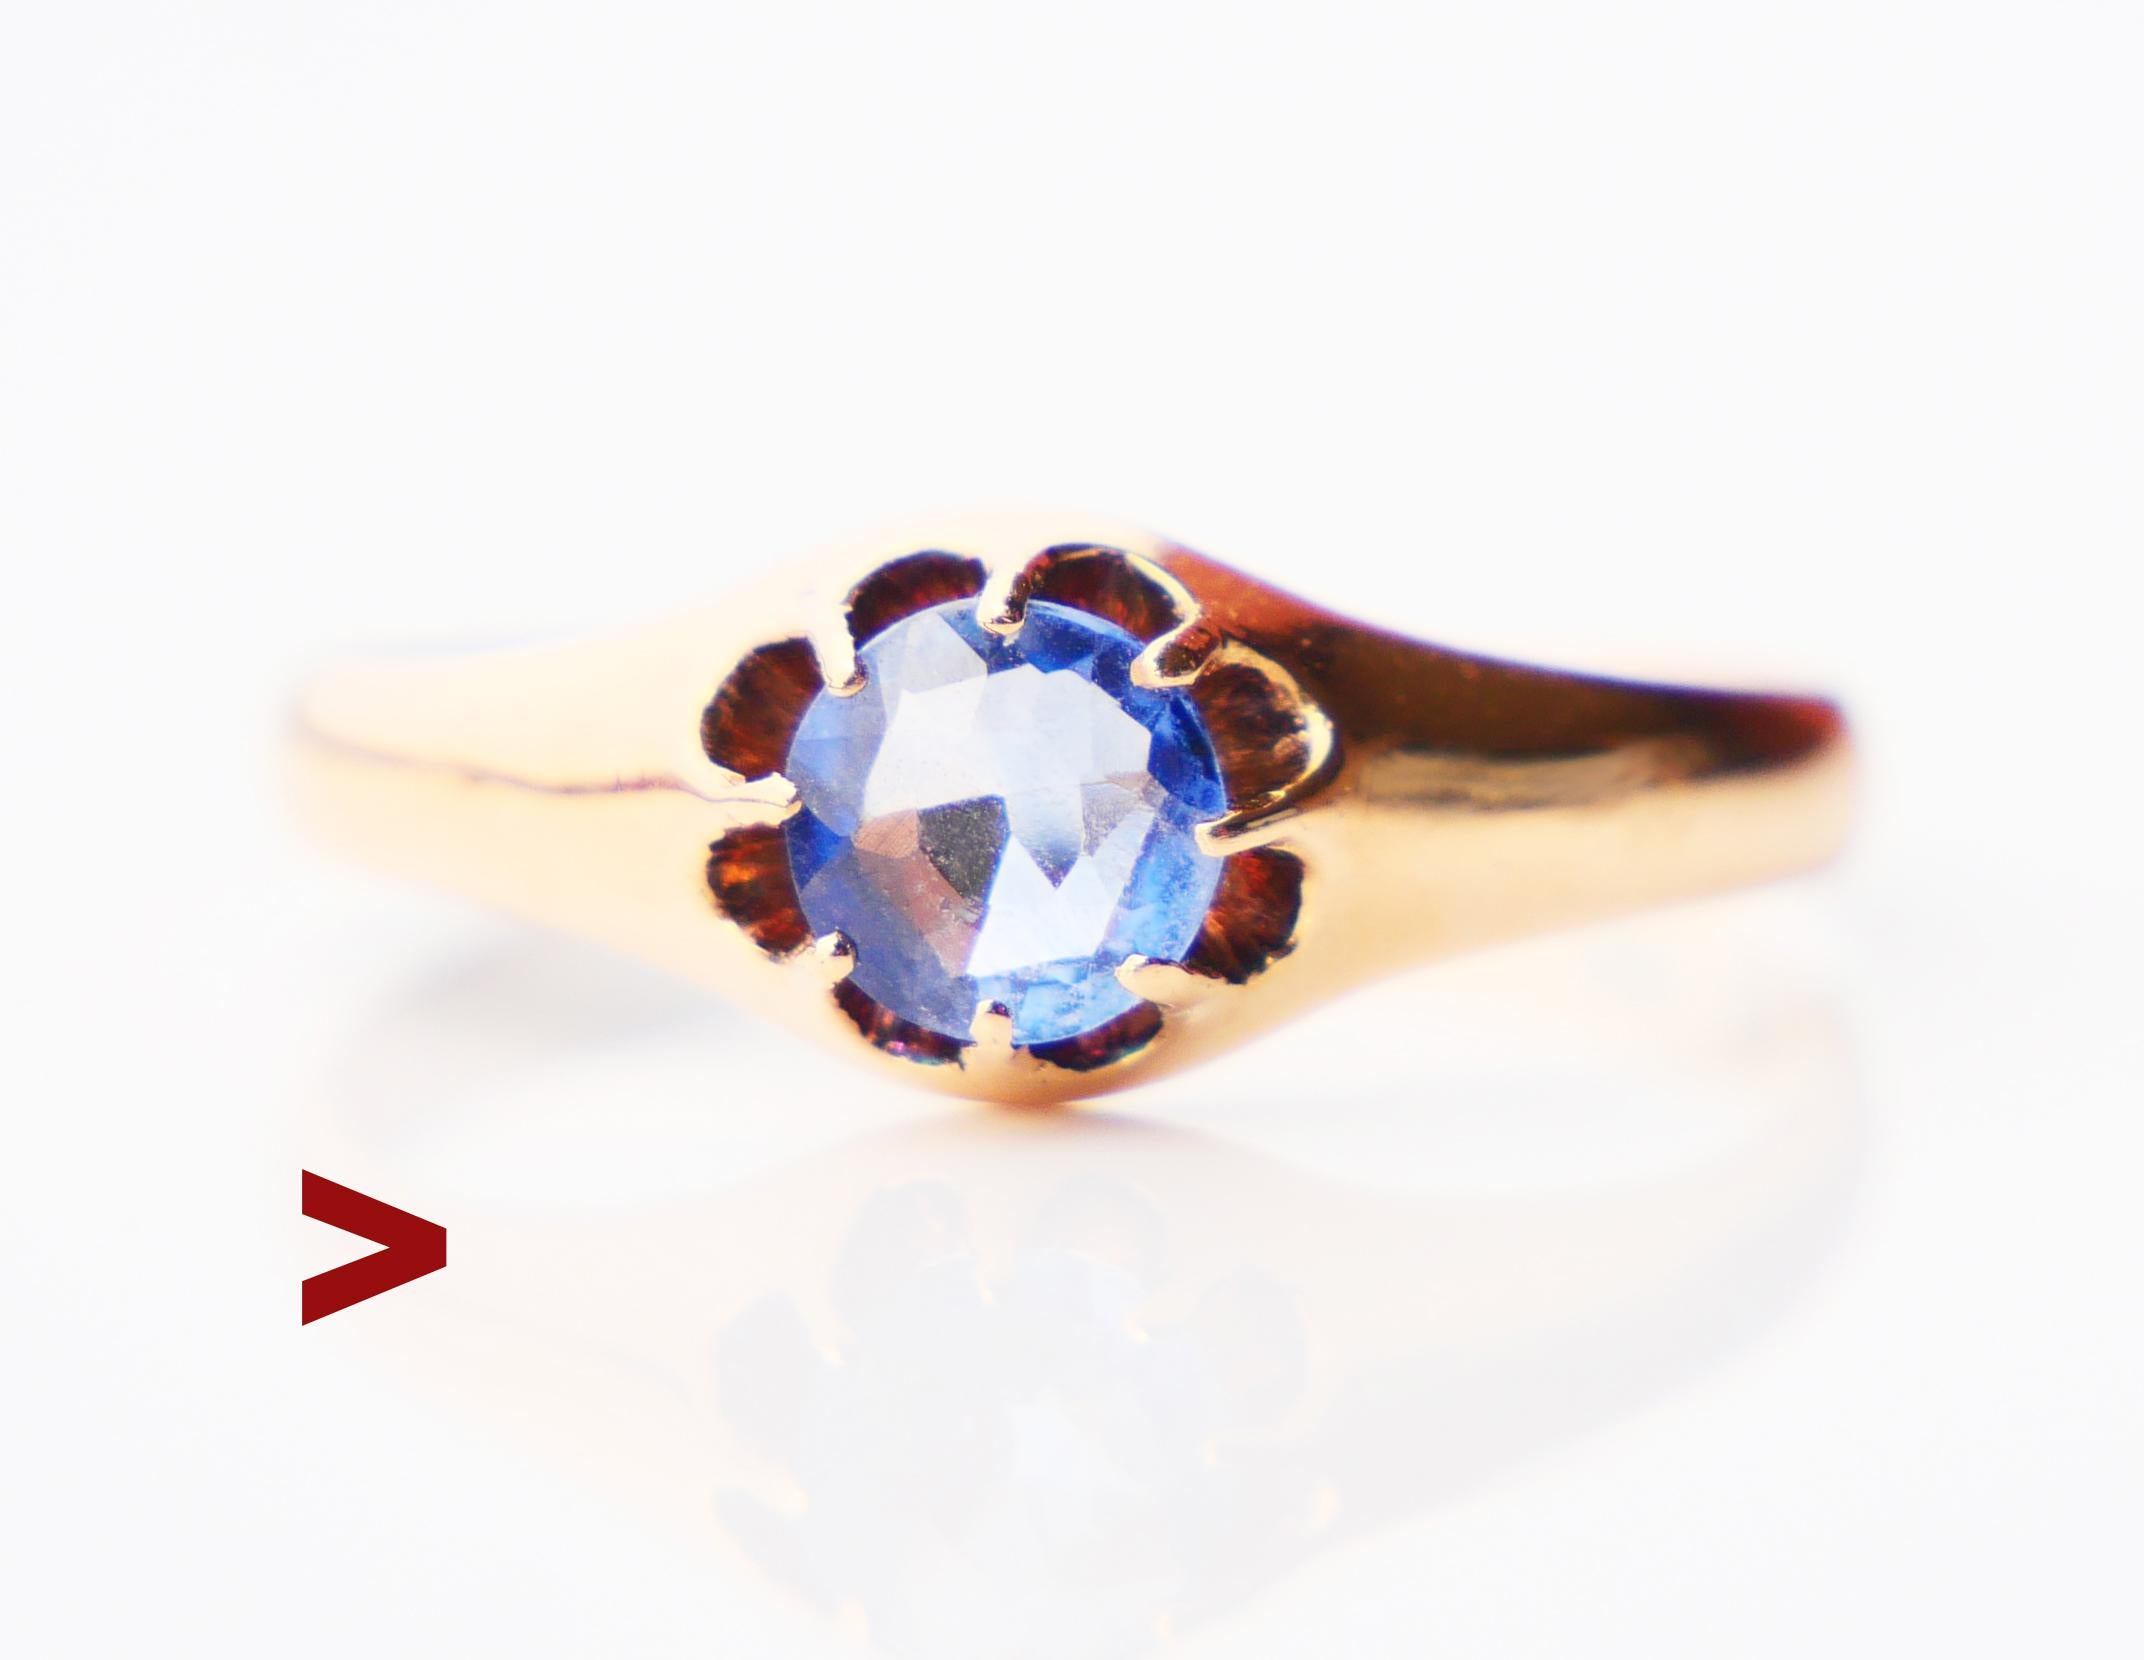 Ein Ring aus der fernen Art Déco-Periode mit einem glatten Band aus 18 K Rose Gold + einem natürlichen Saphir mit altem europäischem Diamantschliff Ø 5 mm x 2 mm tief / ca. 0,7 ct. Der Stein ist von hellblauer / wahrscheinlich Ceylon Cornflower